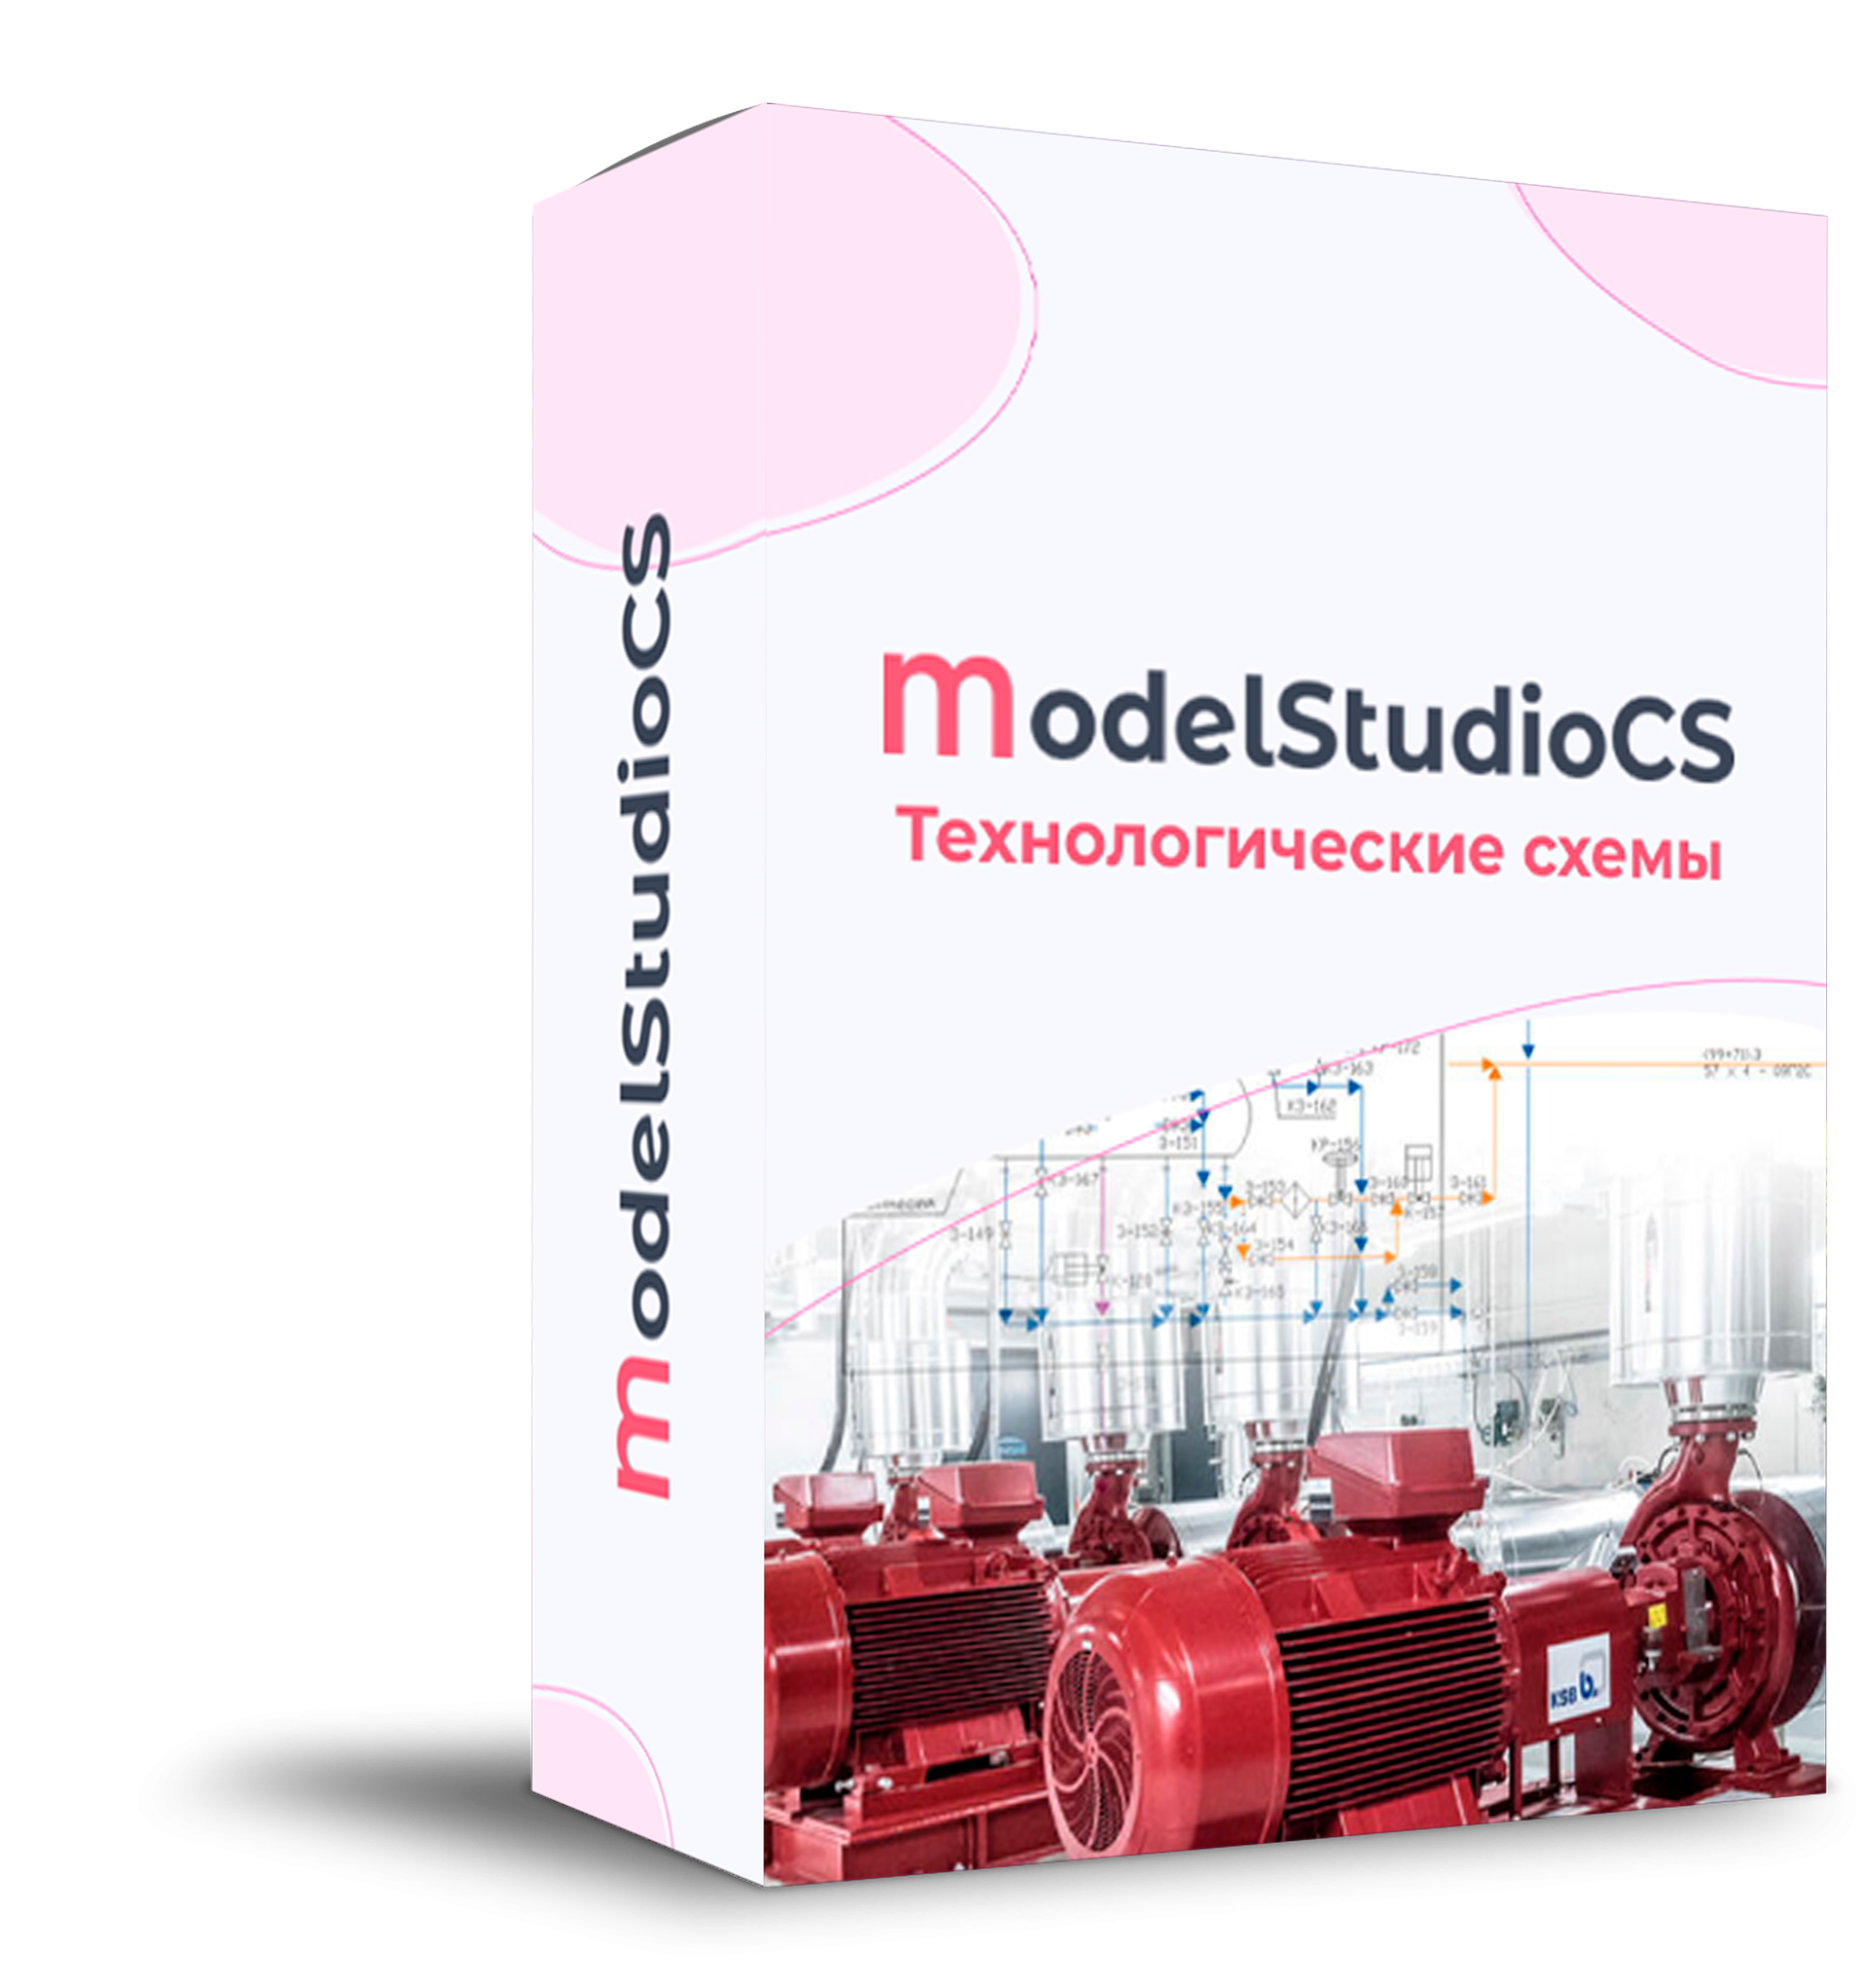 Model Studio CS Технологические схемы